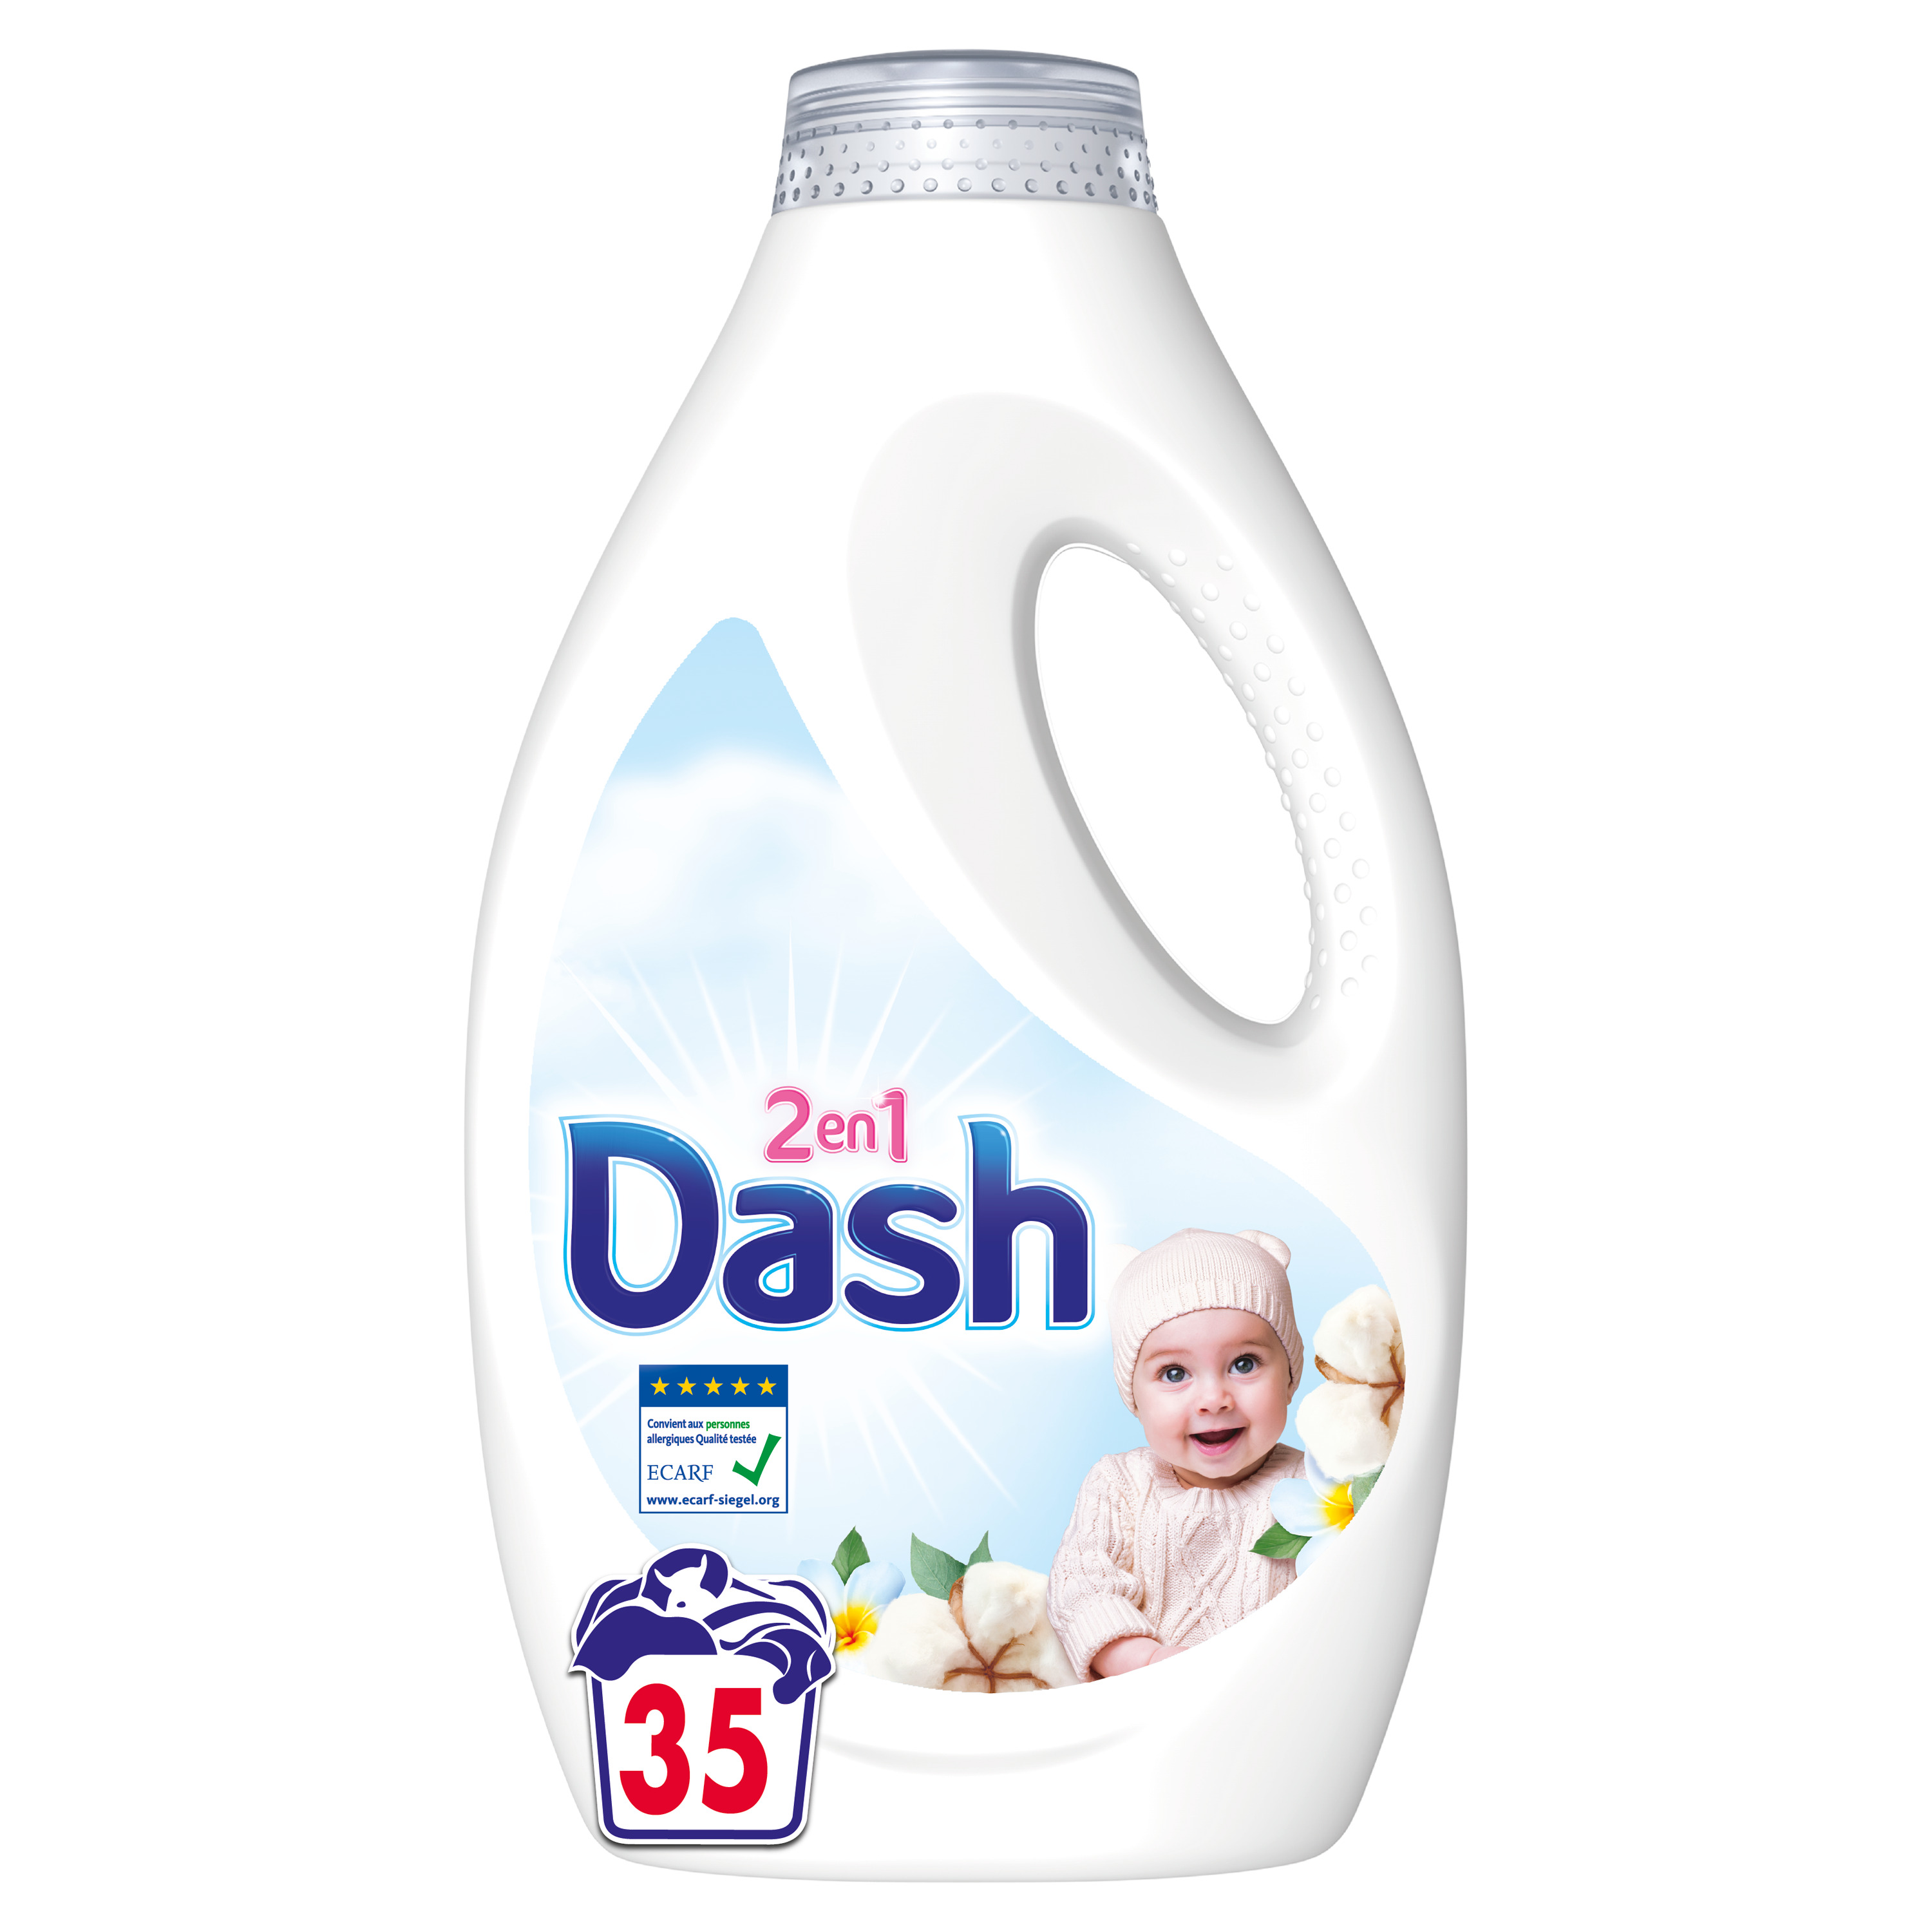 Dash Lessive Liquide, Pour Le Ligne Blanc Et Couleur, 85 Doses, Flacon